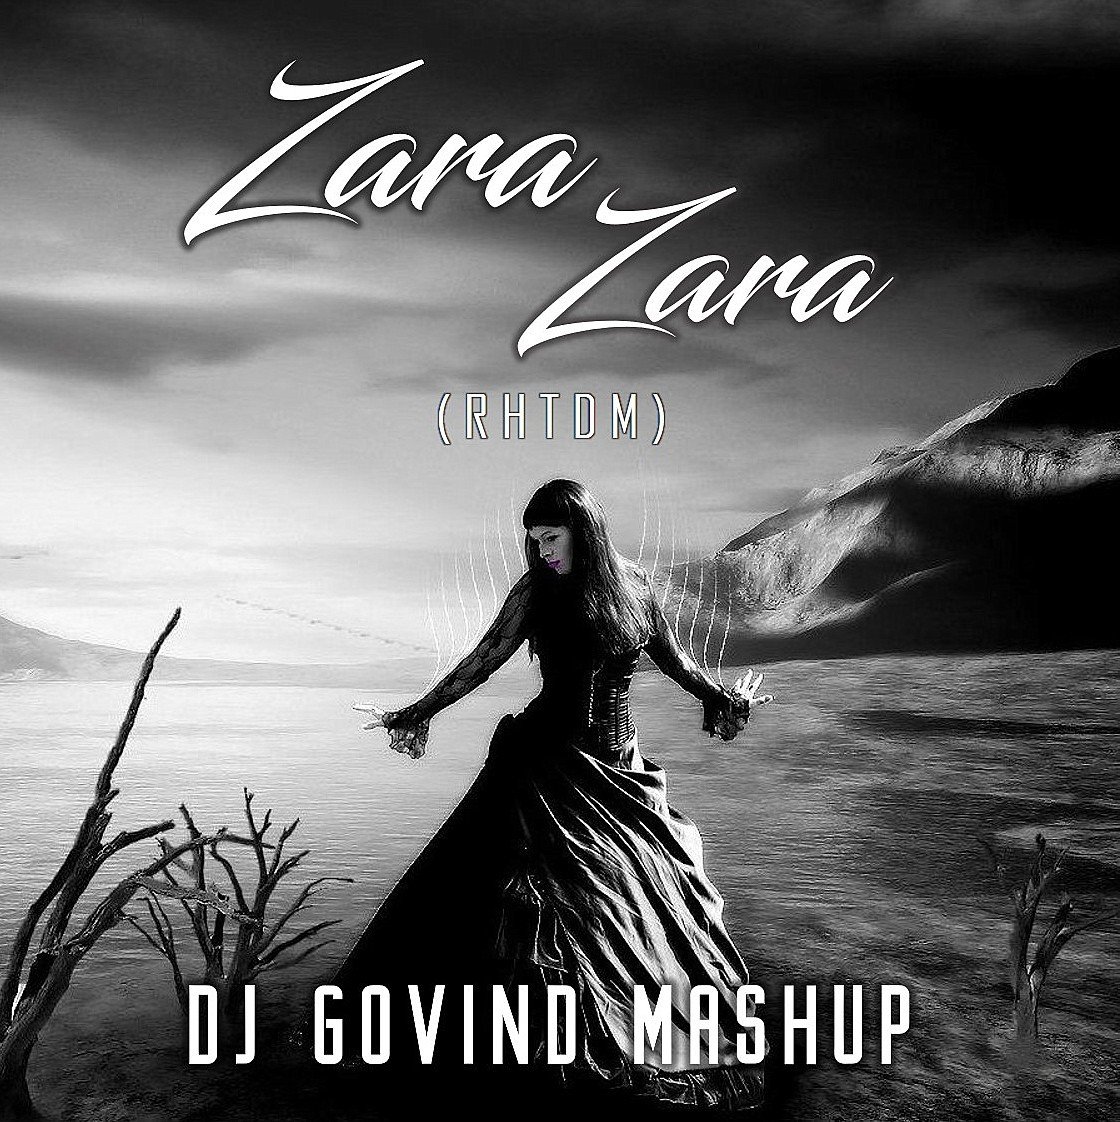 Zara Zara ( RHTDM ) - DJ Govind 2020 Mashup